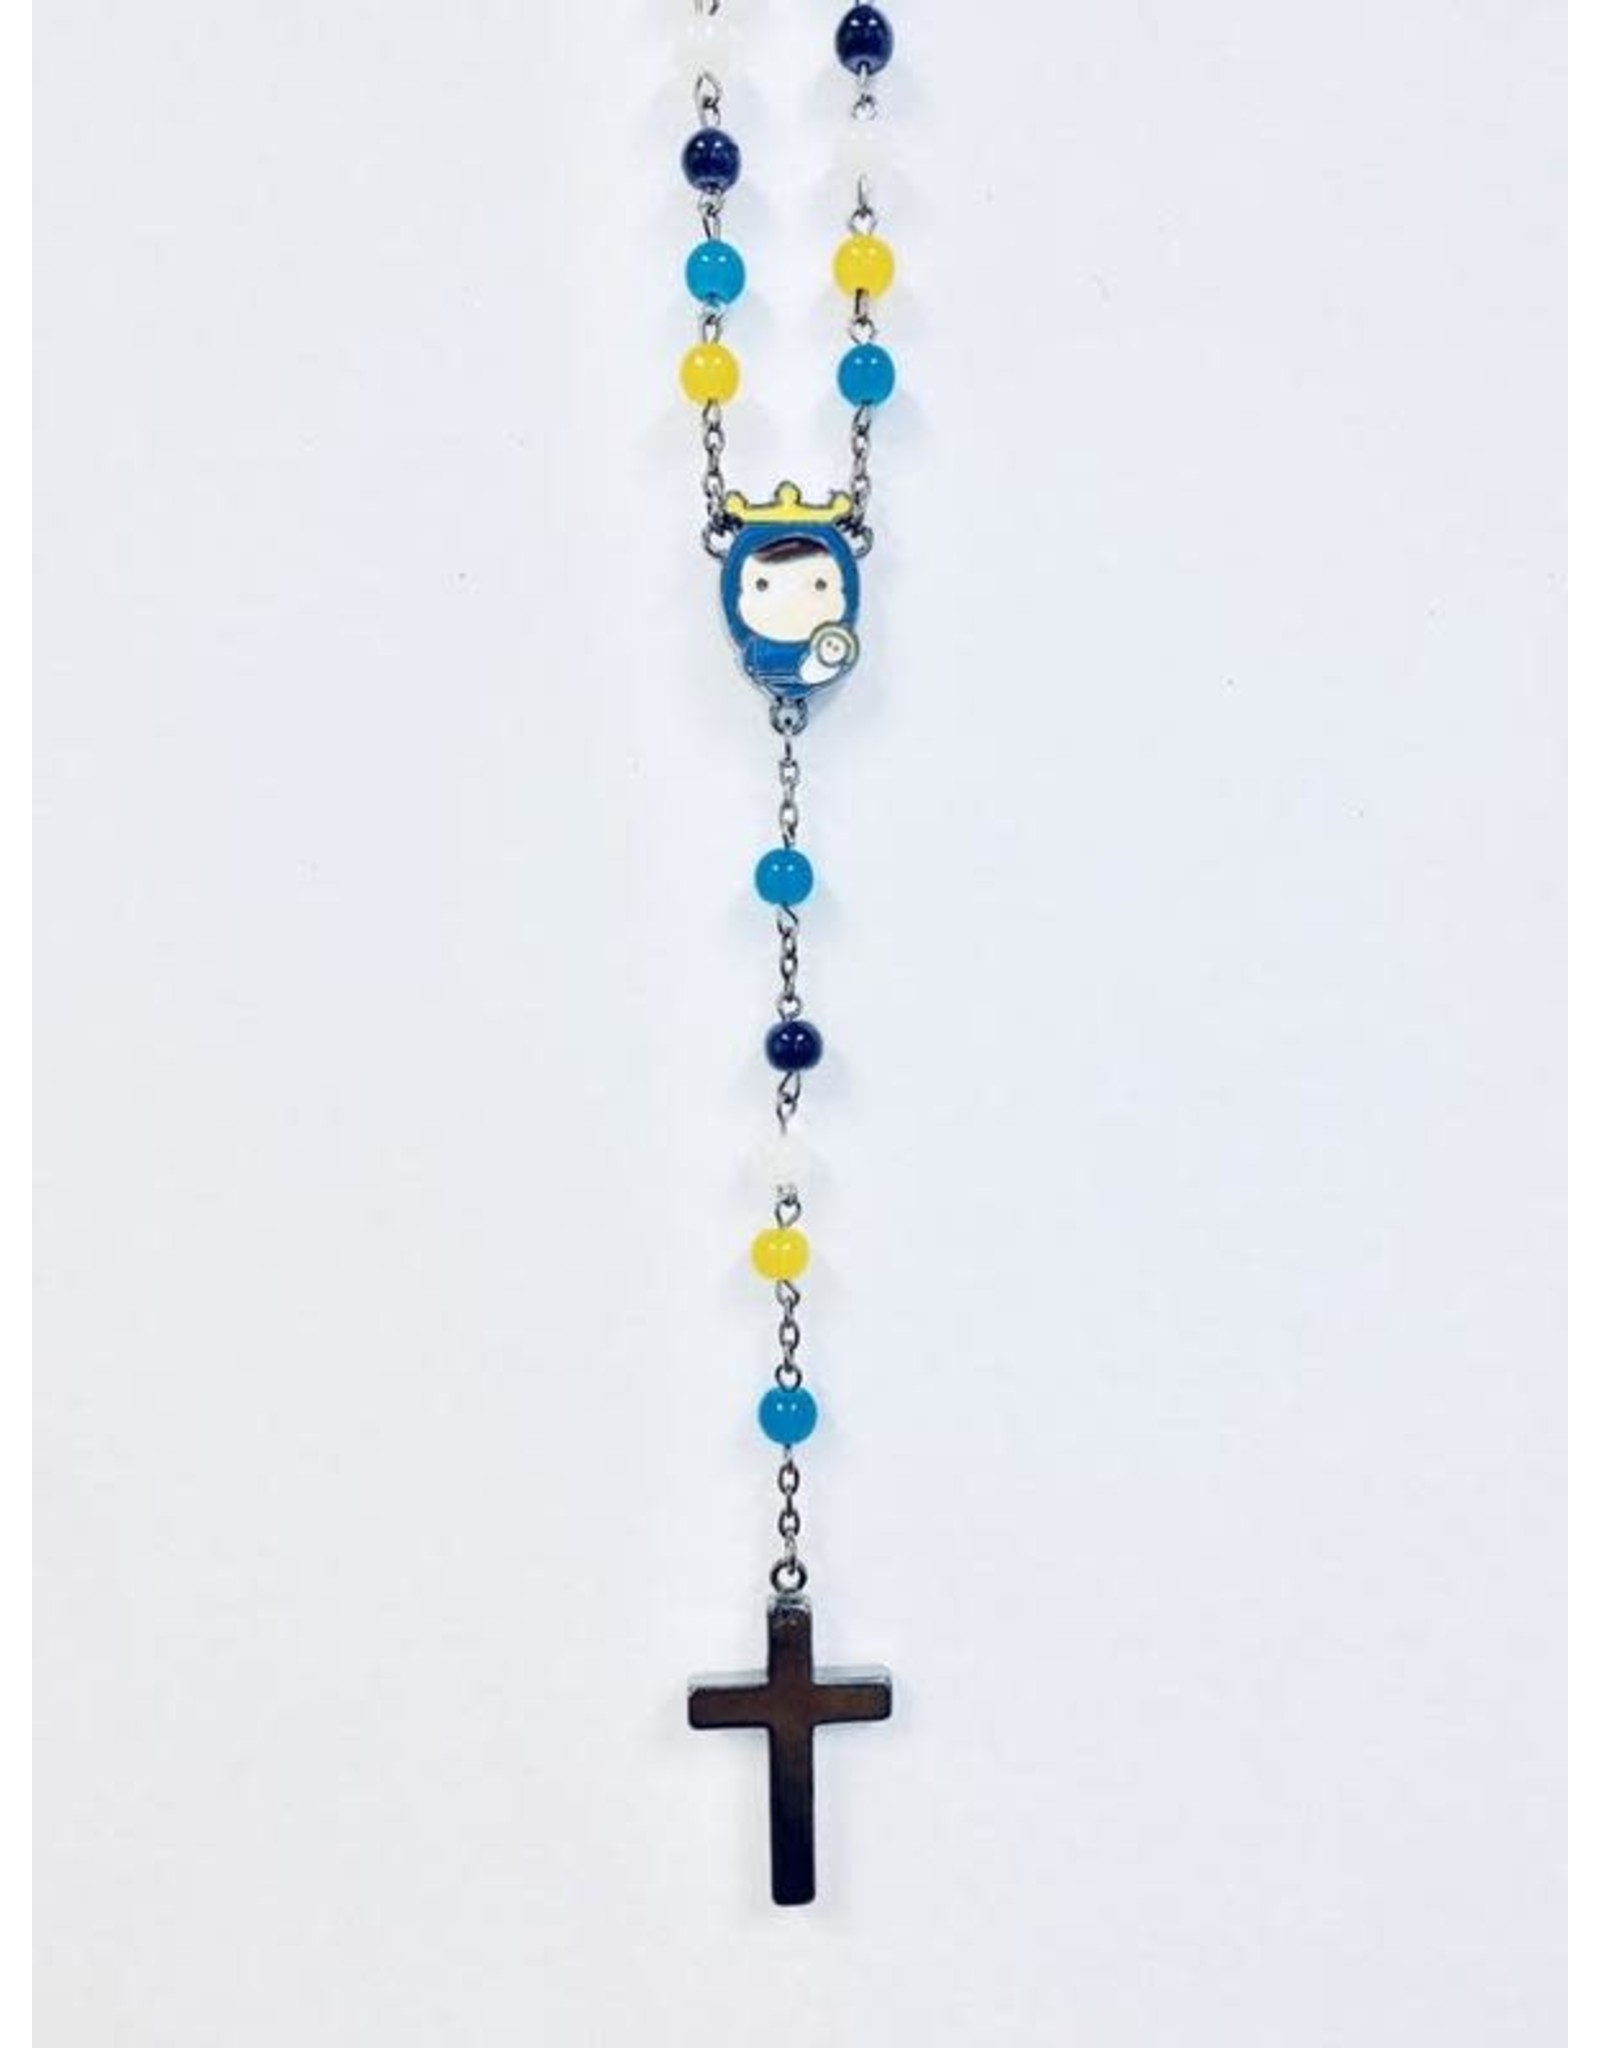 Tiny Saints Tiny Saints Rosary - Multicolor Beads with Hematite Cross